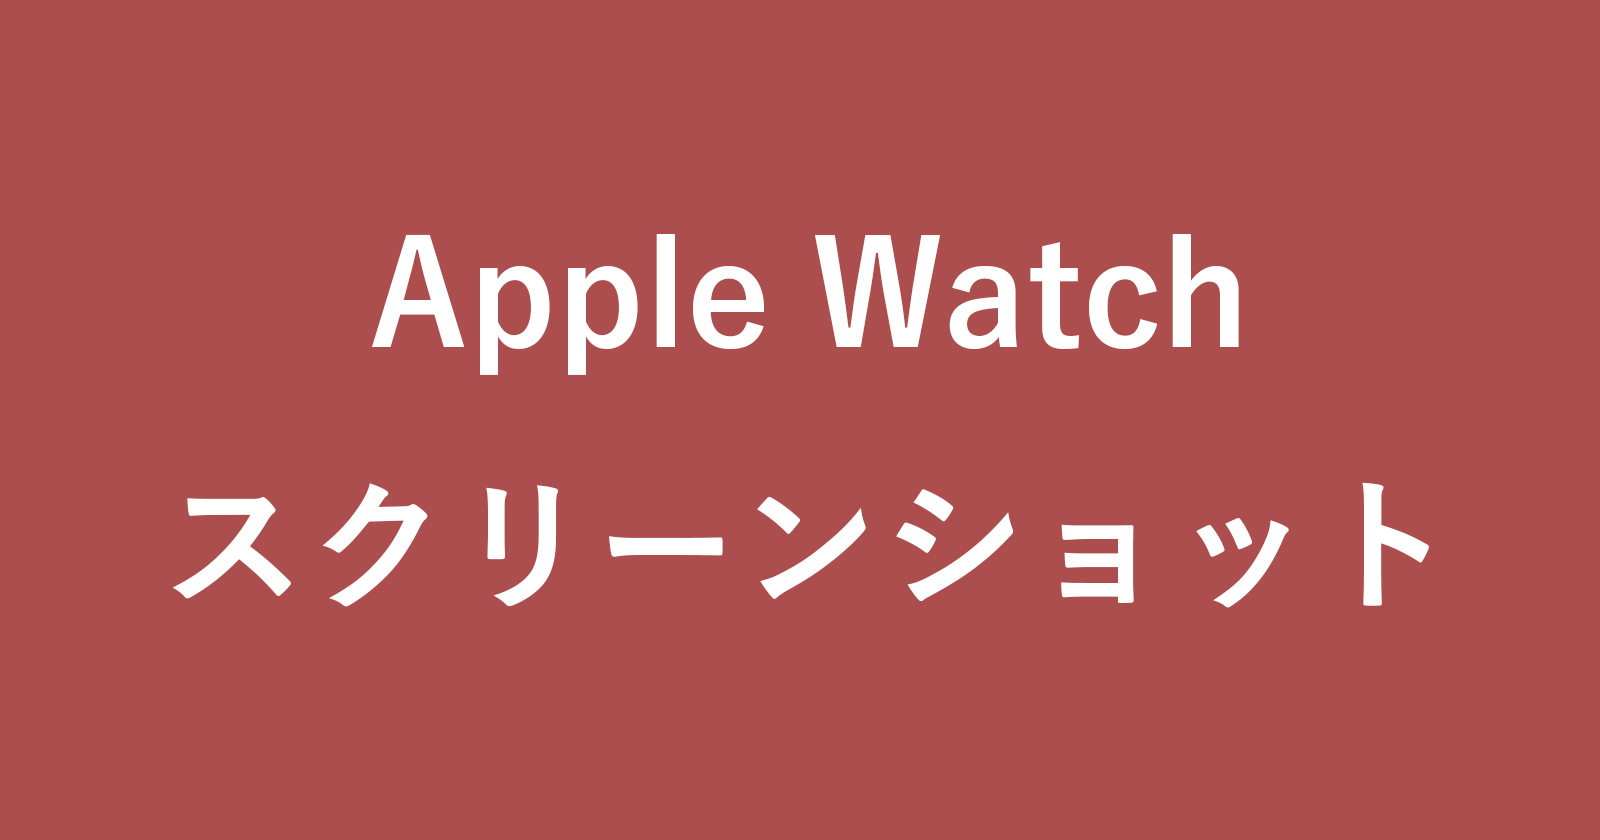 apple watch screenshots